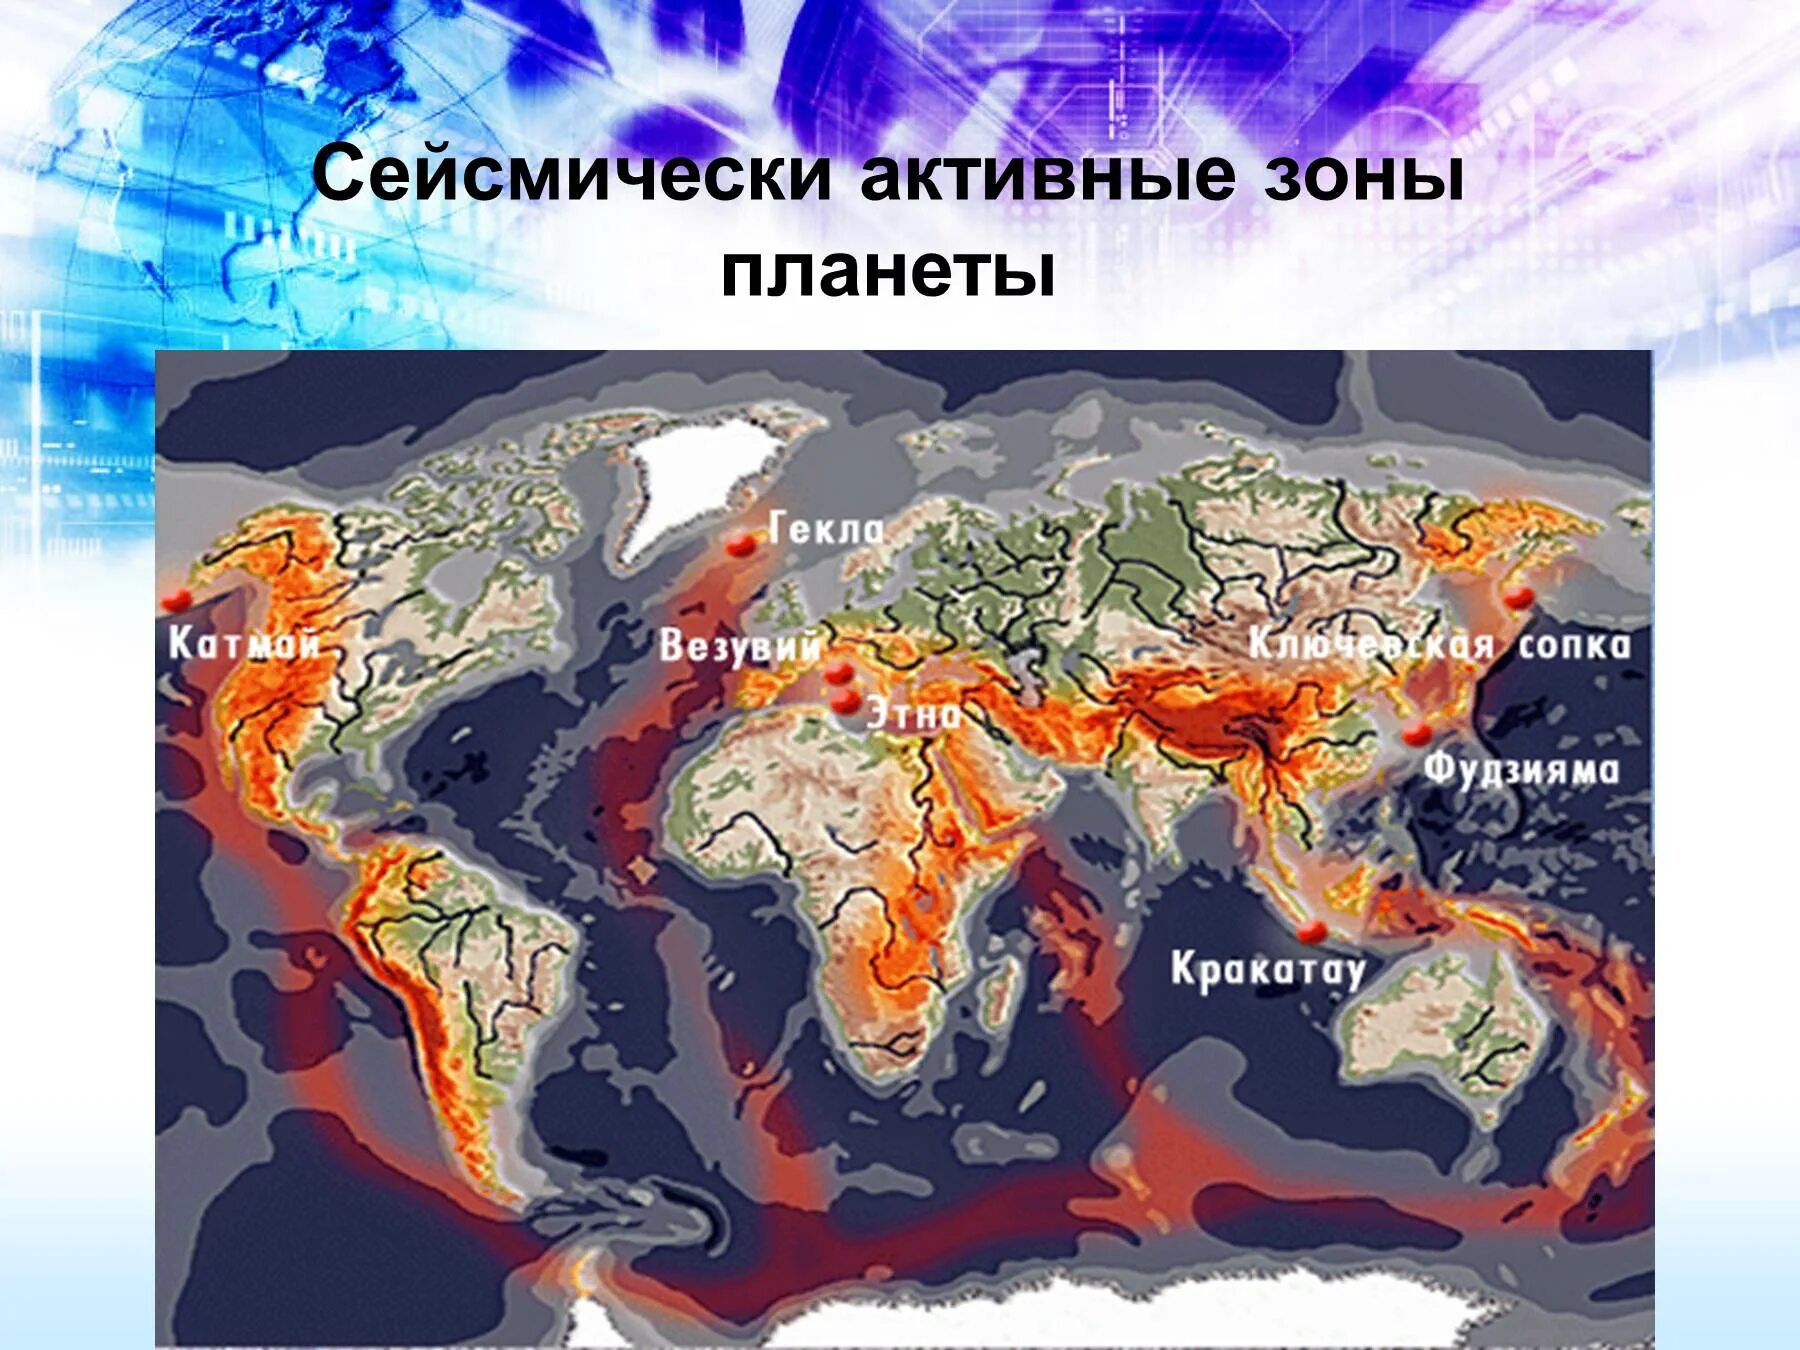 Районы опасных землетрясений. Тихоокеанский сейсмический пояс. Зоны сейсмической активности Евразии. Действующие вулканы Евразии на карте.